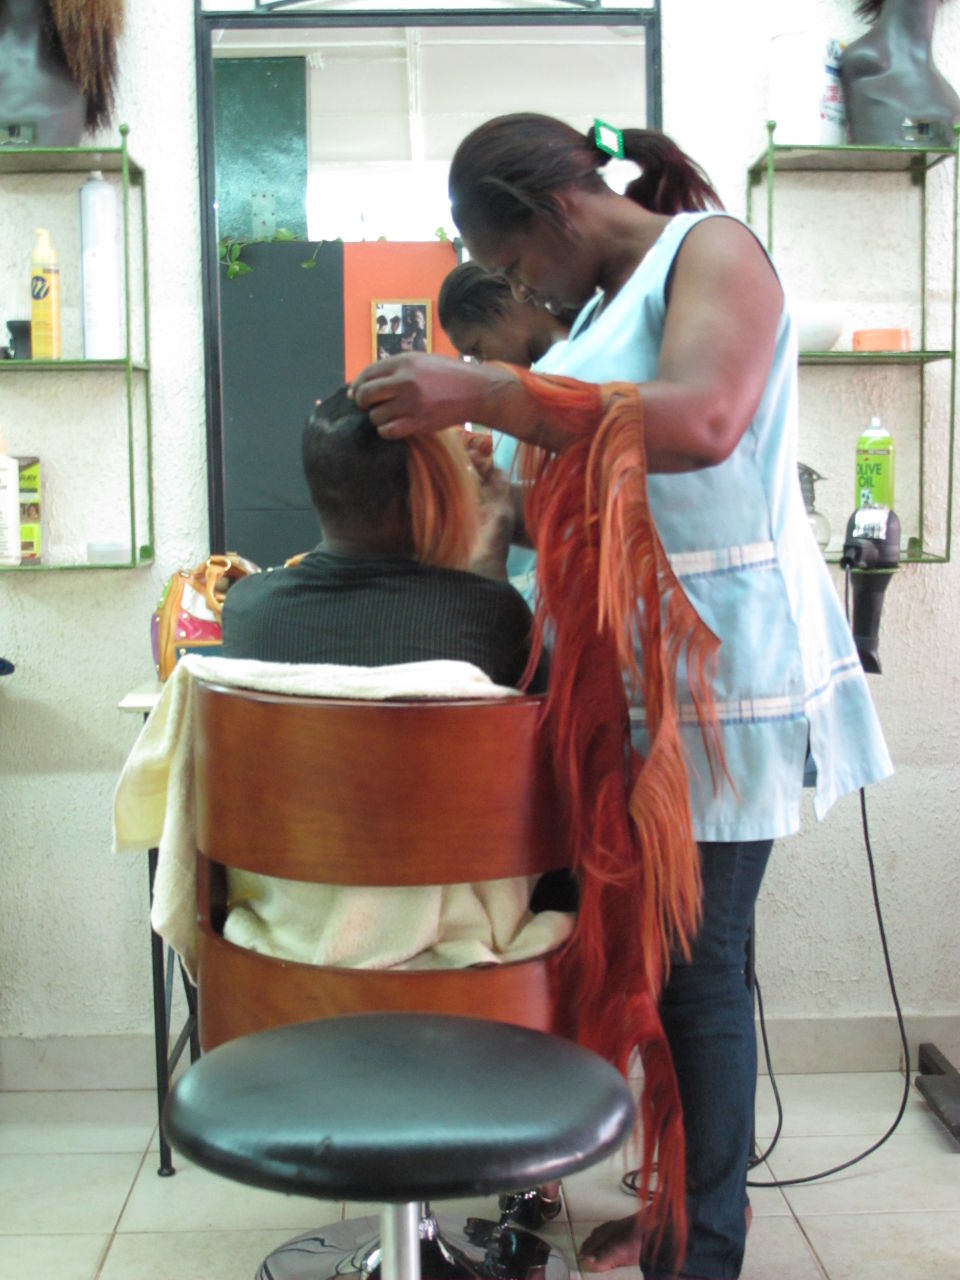 Die Friseurin klebt hier das Kunsthaar Strähne für Strähne unter das natürliche Haar, am Ende schneidet sie es zur Frisur.